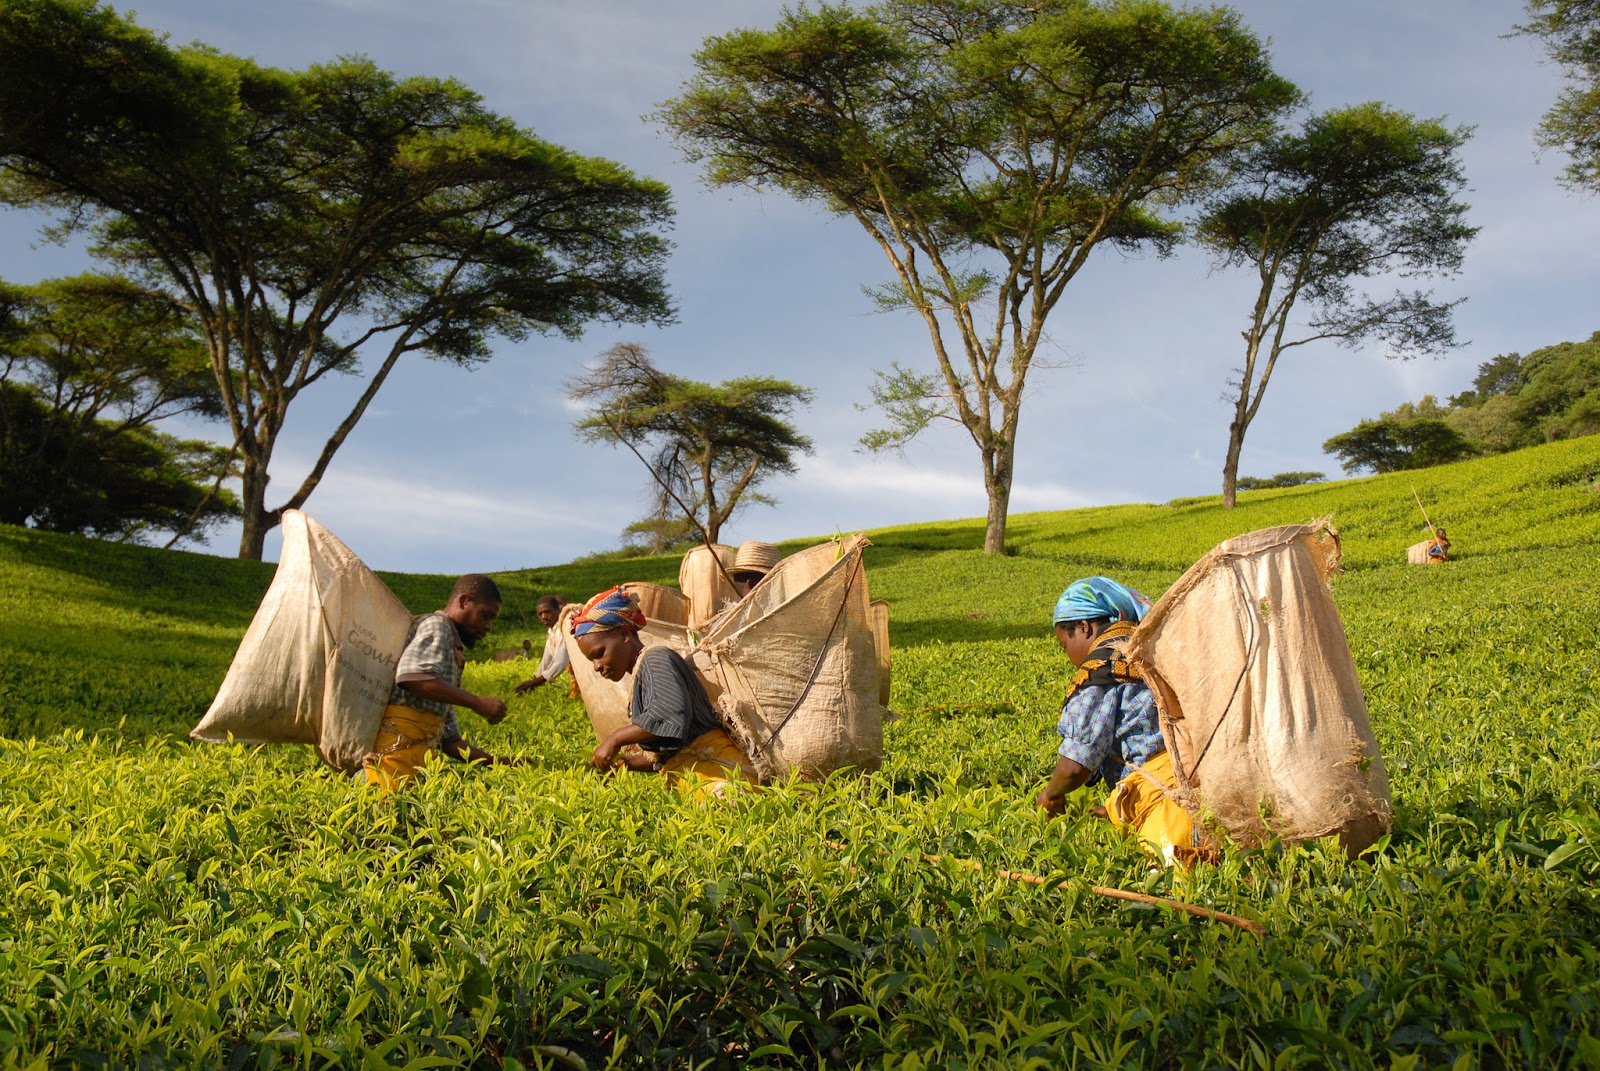 Workers at Satemwa Tea Estate, harvesting tea leaves